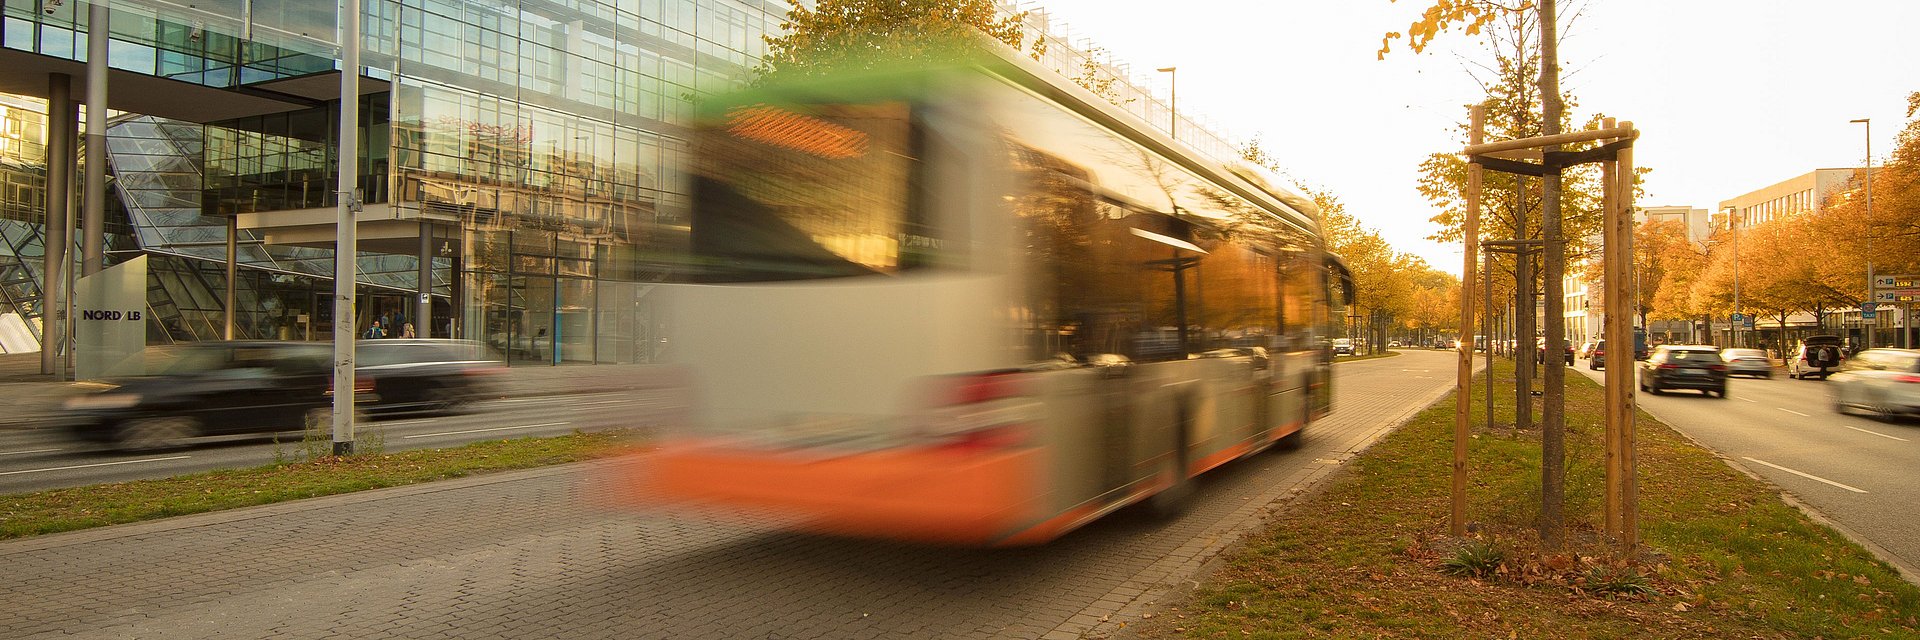 Bild von einem fahrenden ÜSTRA Bus in der Innenstadt